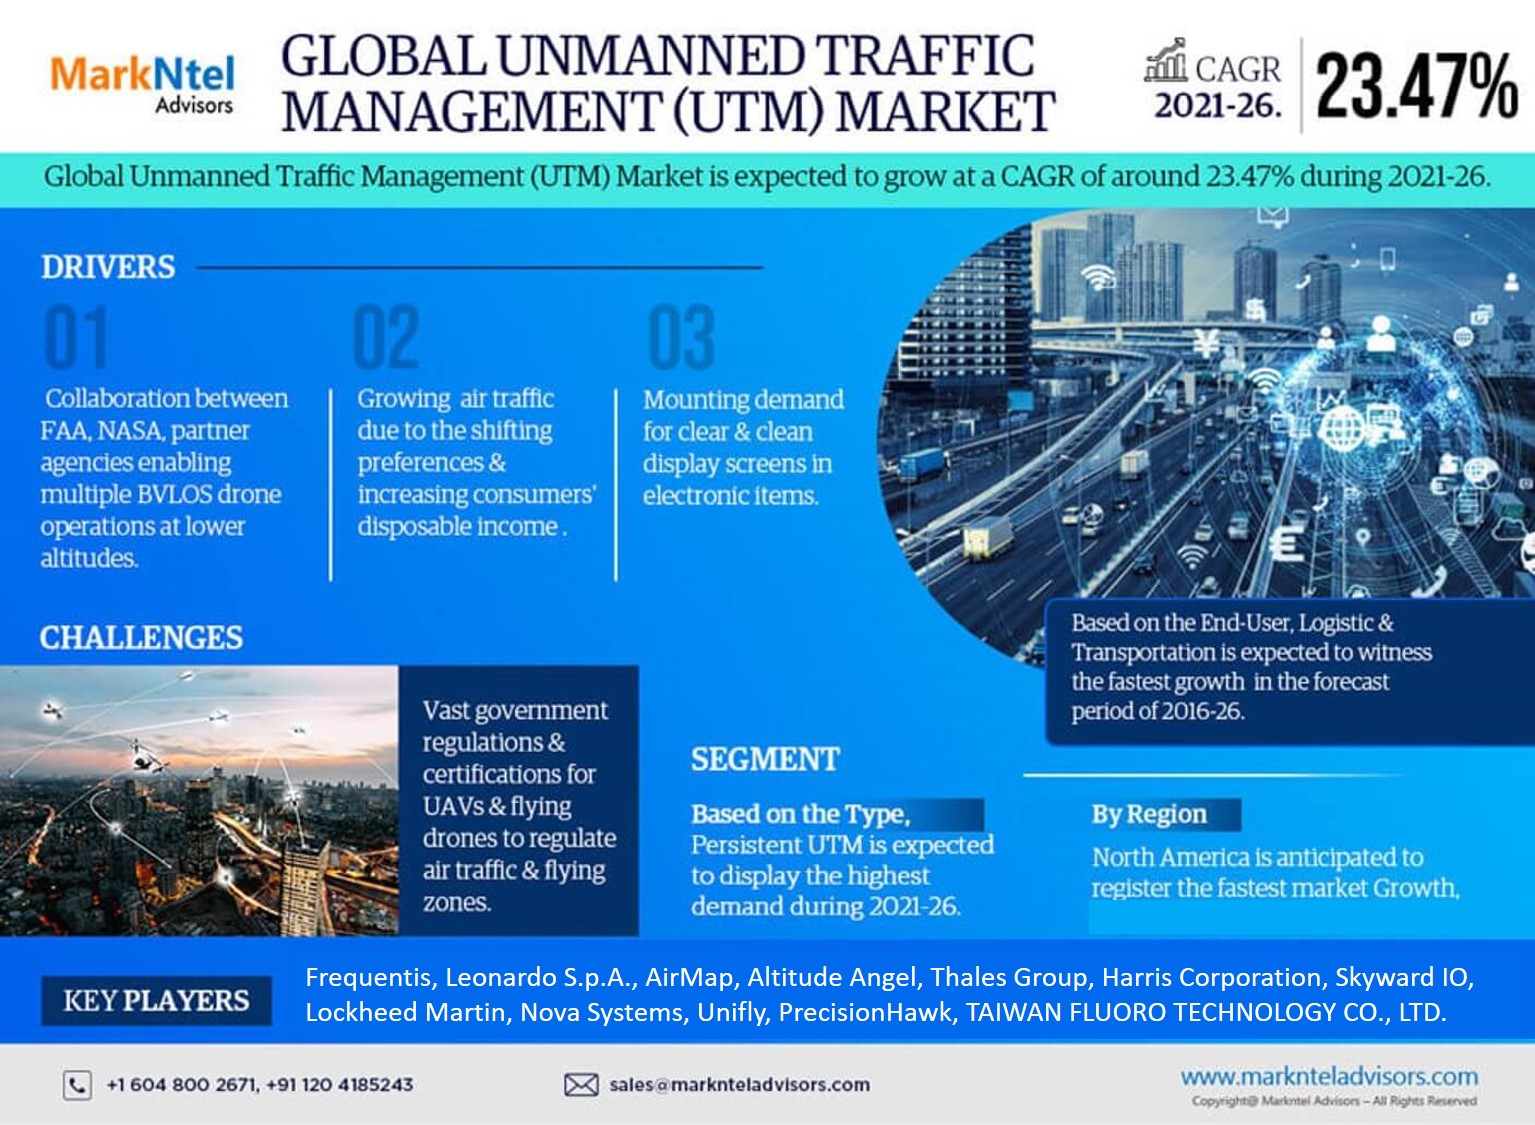 Unmanned Traffic Management (UTM) Market